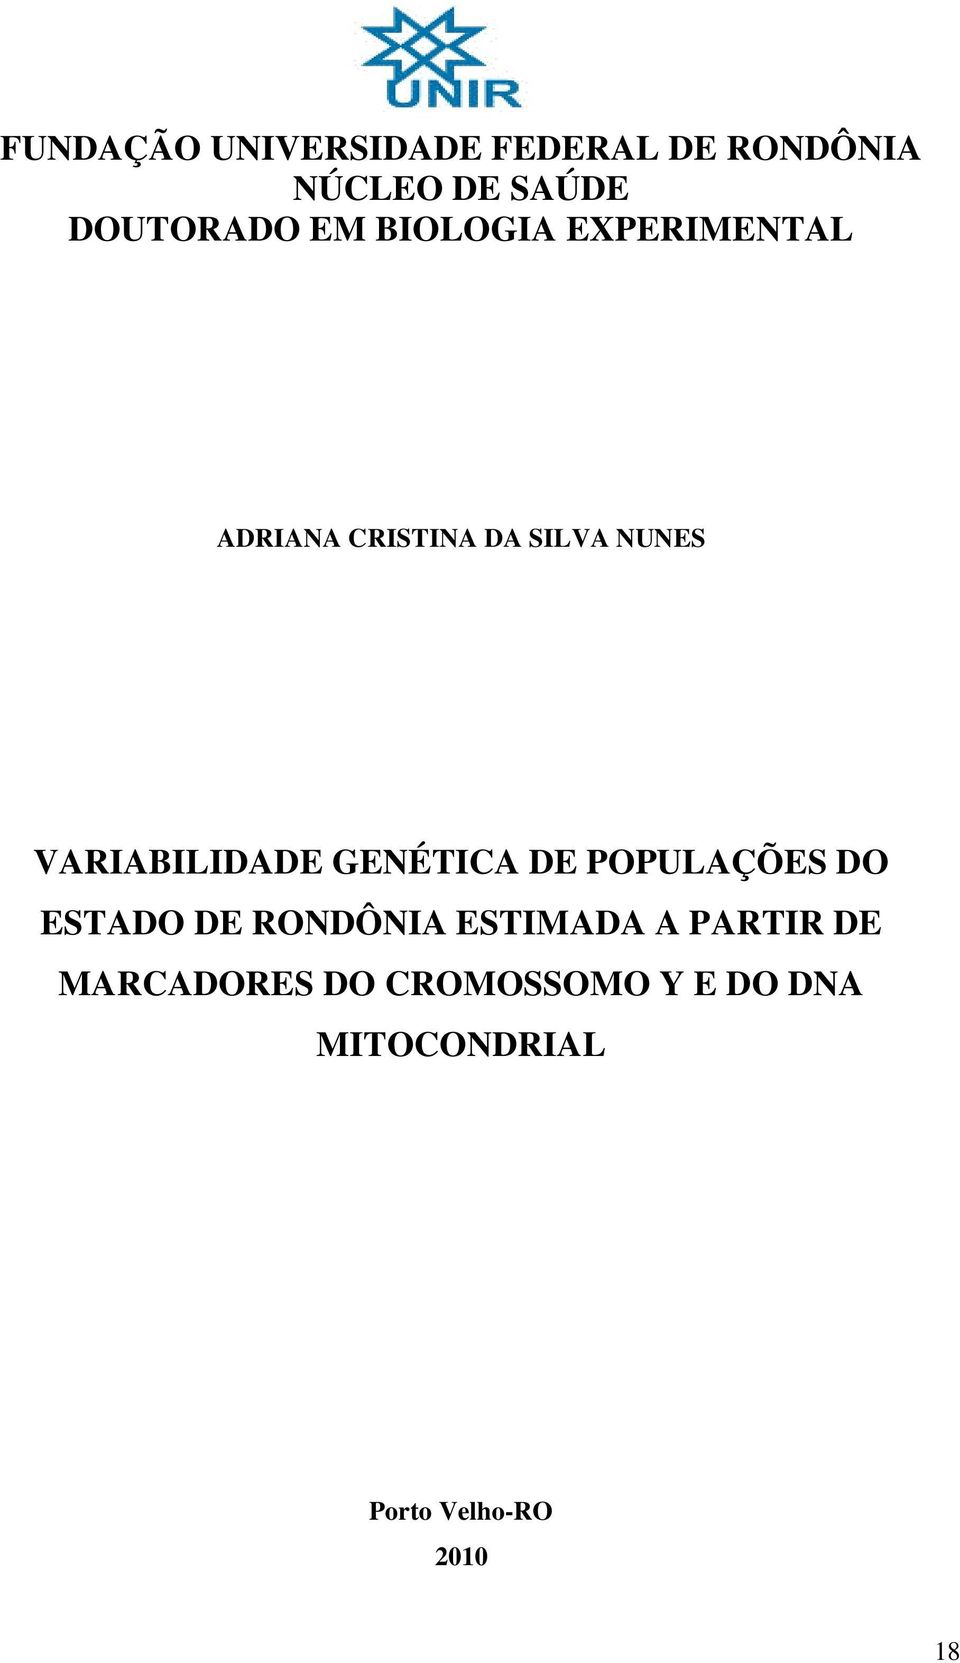 VARIABILIDADE GENÉTICA DE POPULAÇÕES DO ESTADO DE RONDÔNIA ESTIMADA